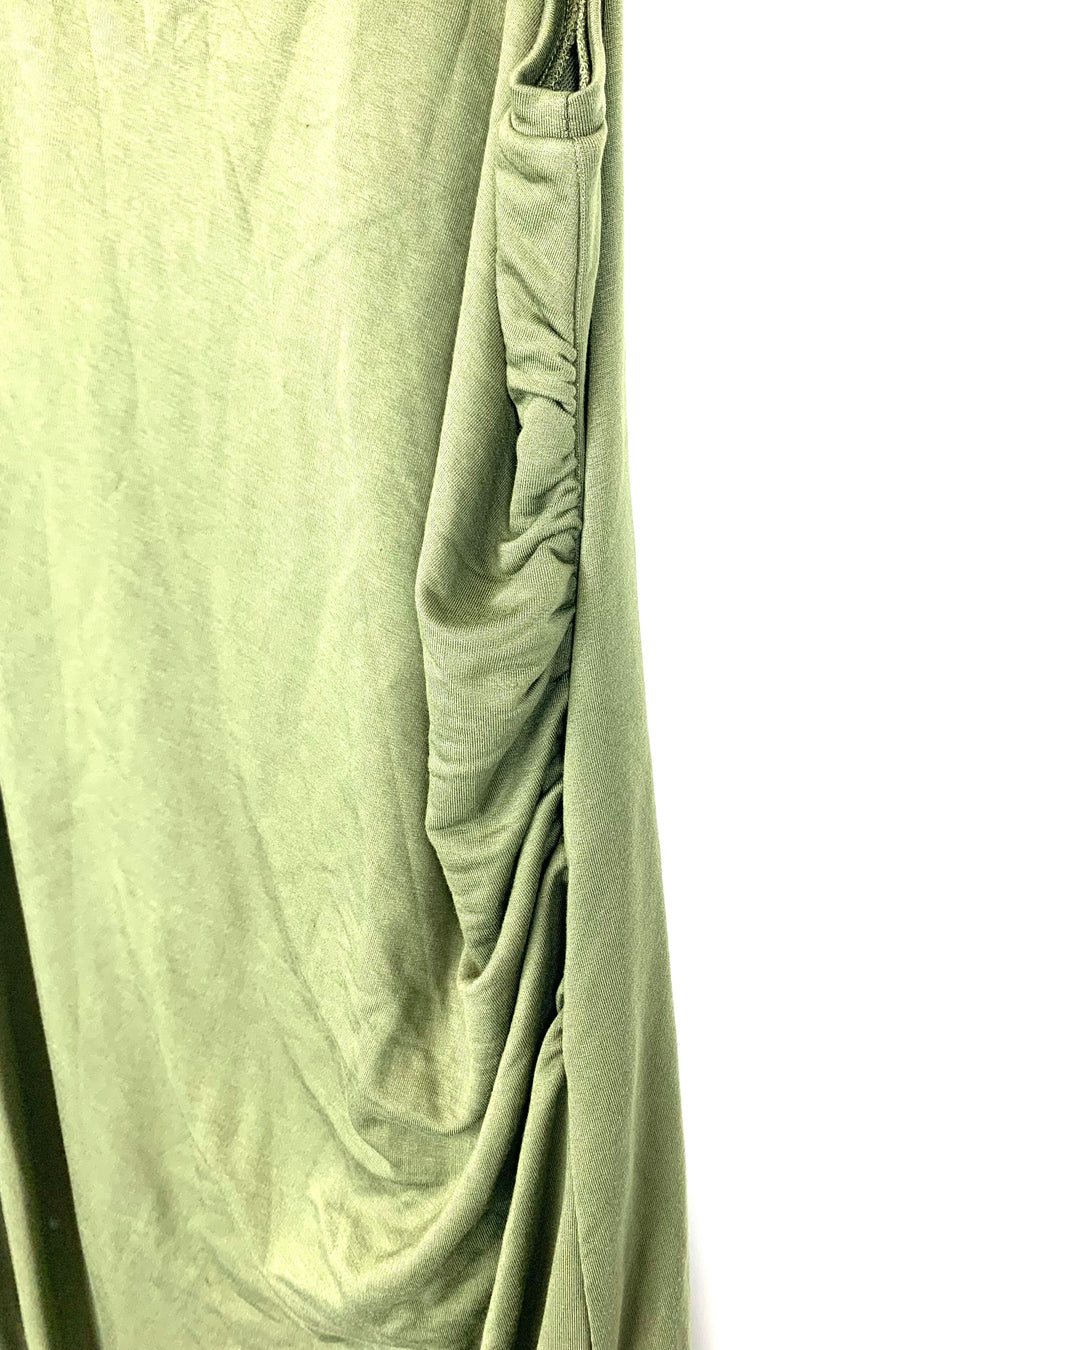 Green Sleeveless Dress - Large/Extra Large